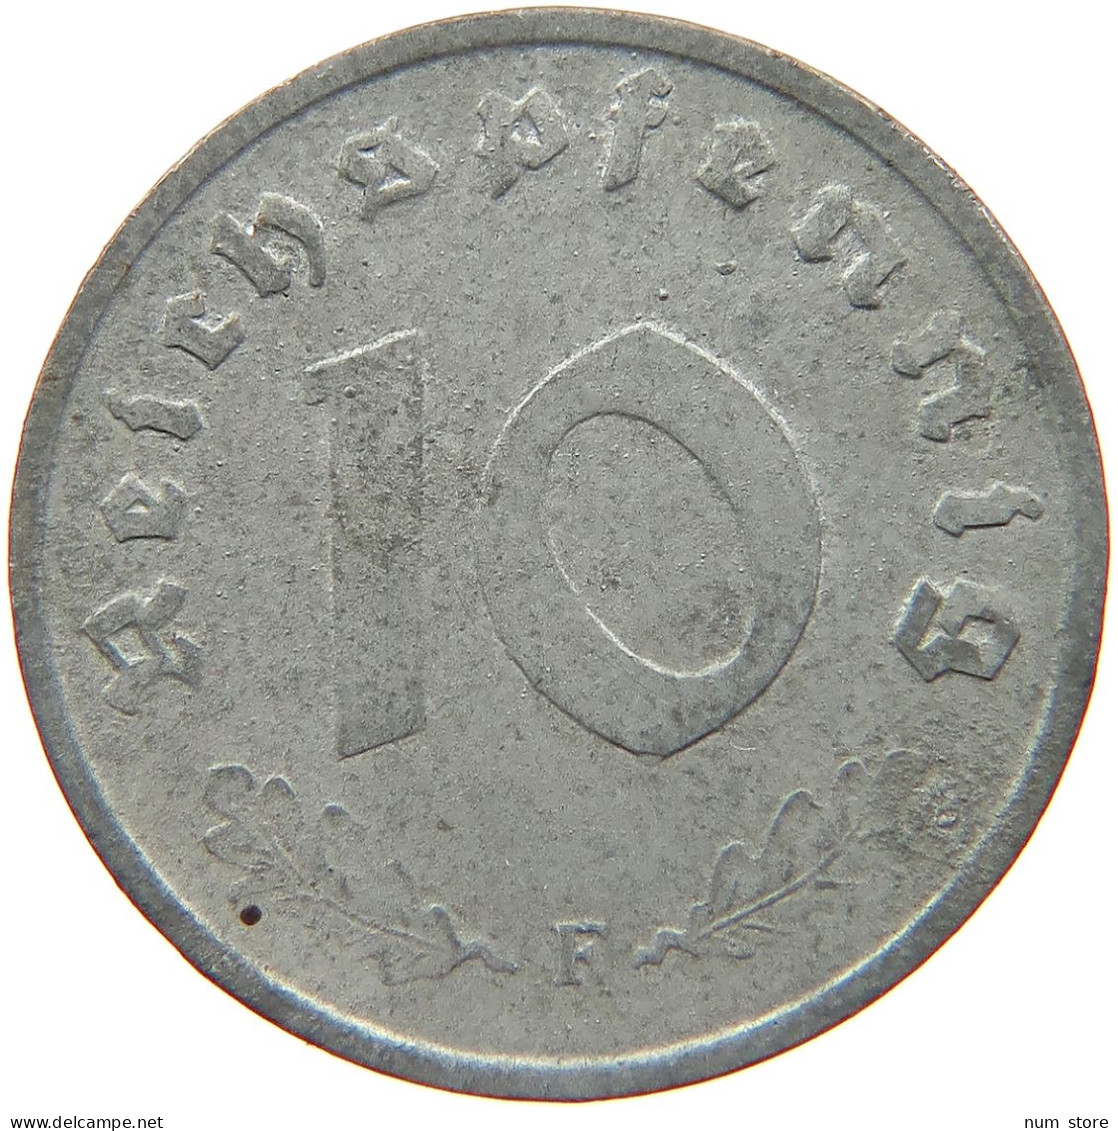 GERMANY 10 REICHSPFENNIG 1945 F #s081 0101 - 10 Reichspfennig